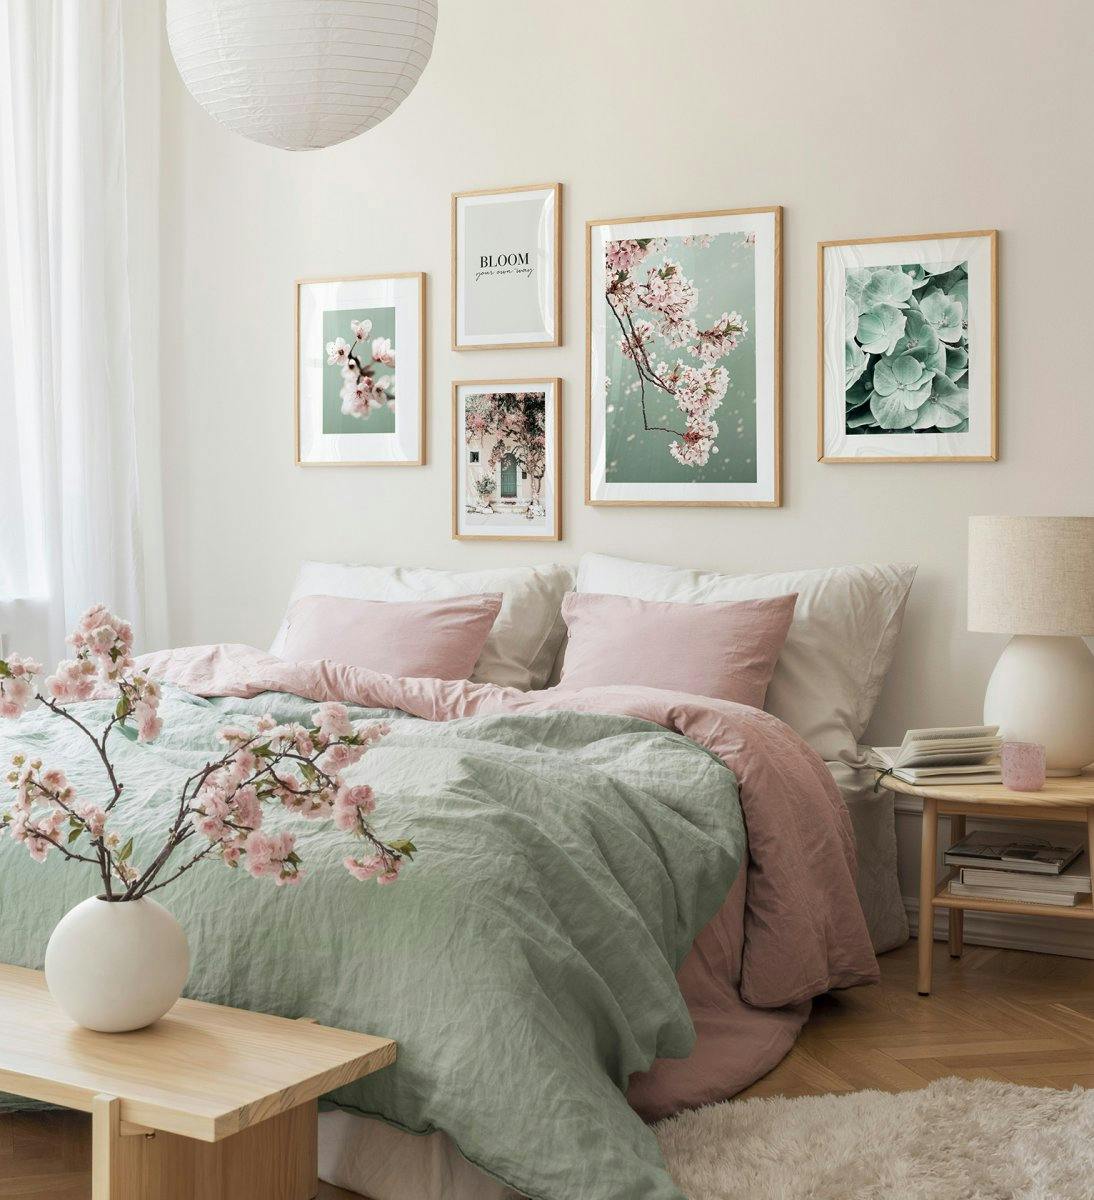 Galerie de perete verde pentru dormitor, cu fotografii de artistice inspirate din natură și rame de stejar